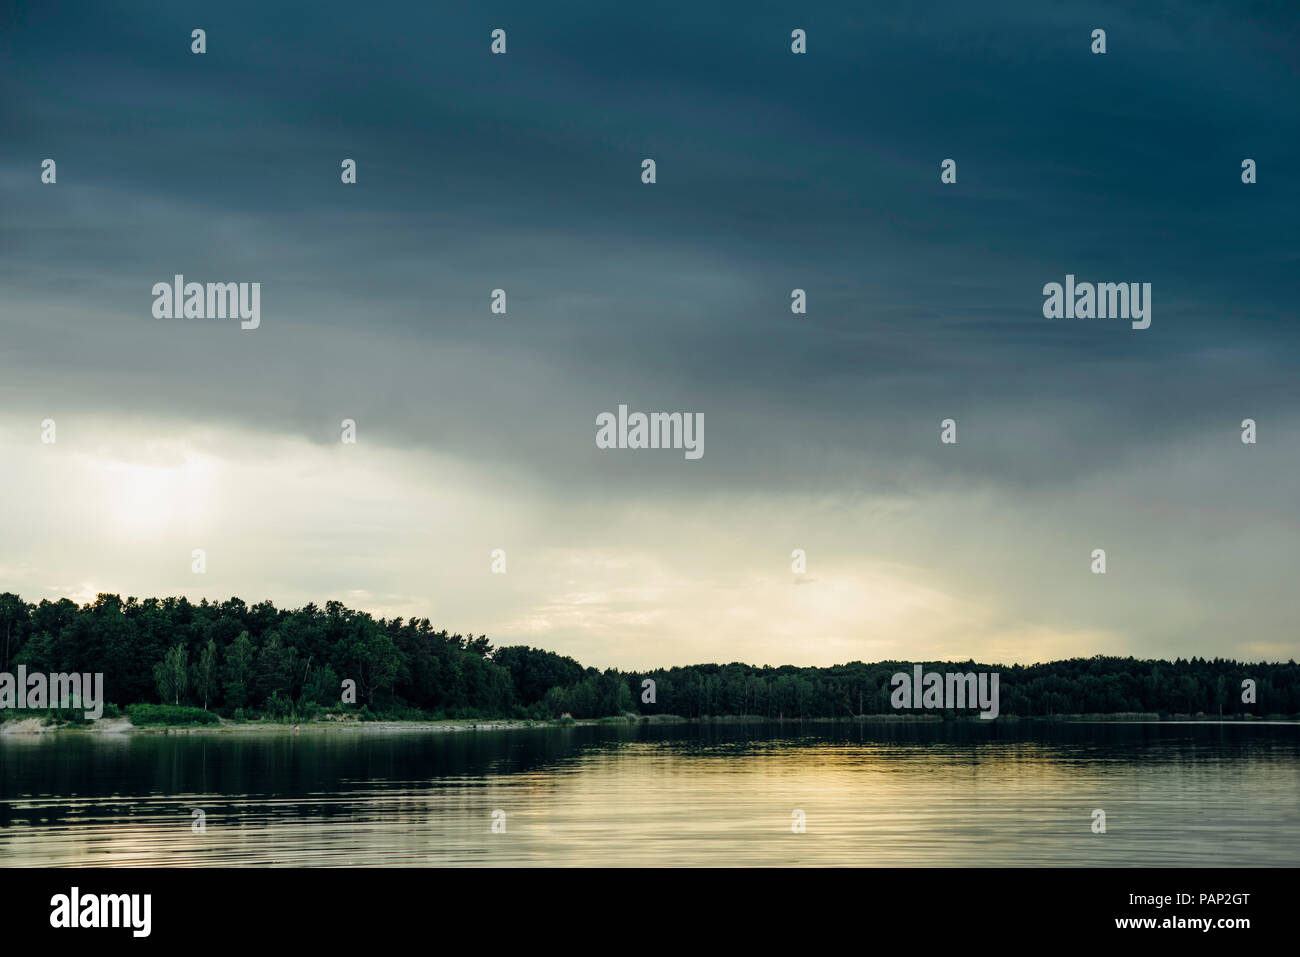 Germany, Saxony, Naunhof, lake at dusk Stock Photo